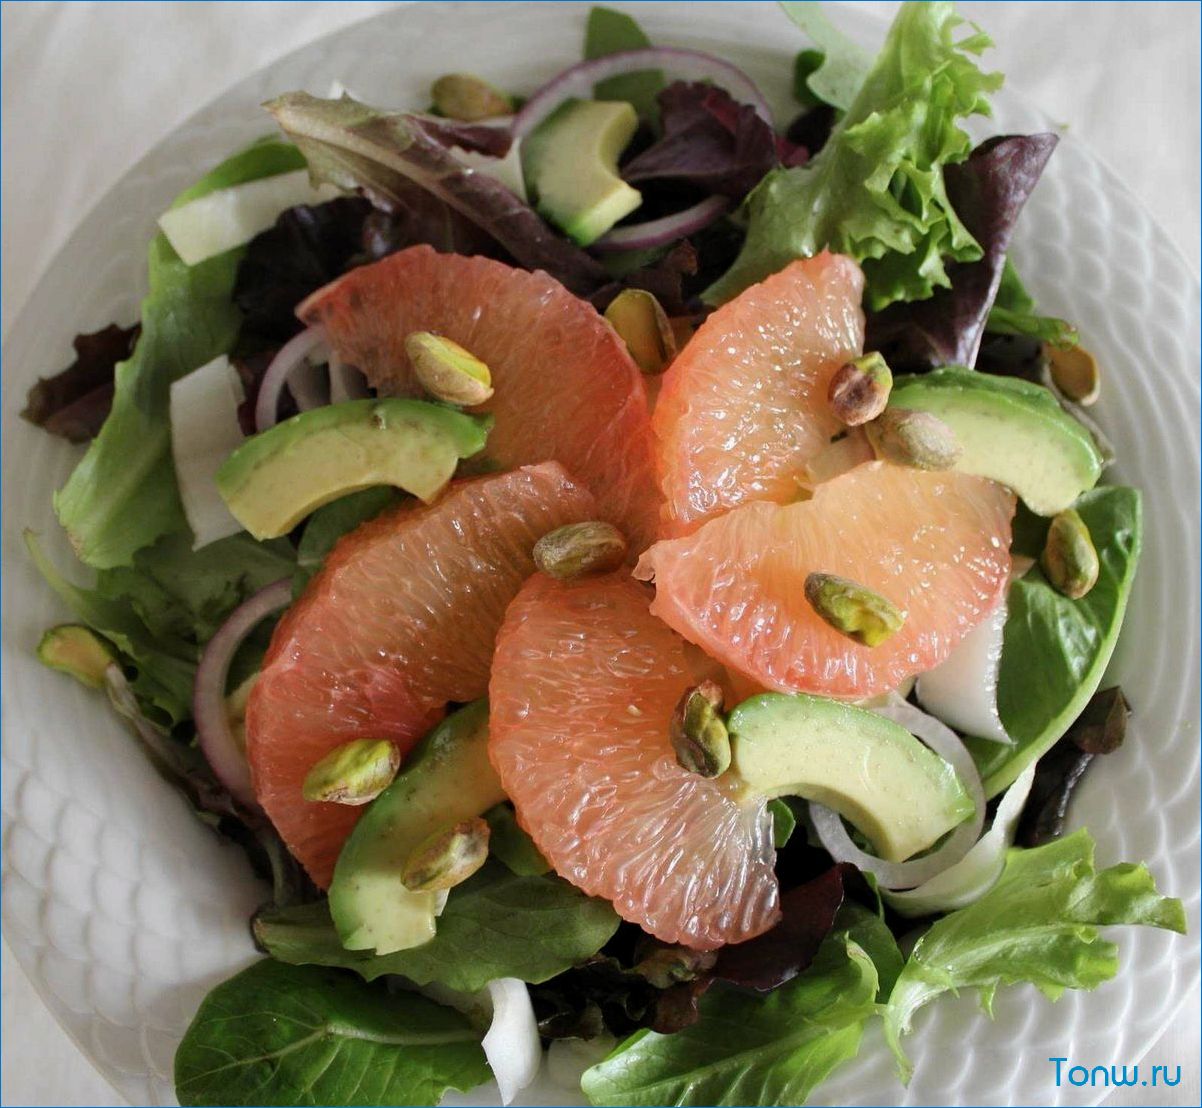 Рецепт вкусного салата с лобстером, грейпфрутом и авокадо — кулинарное трио из морепродуктов и фруктов